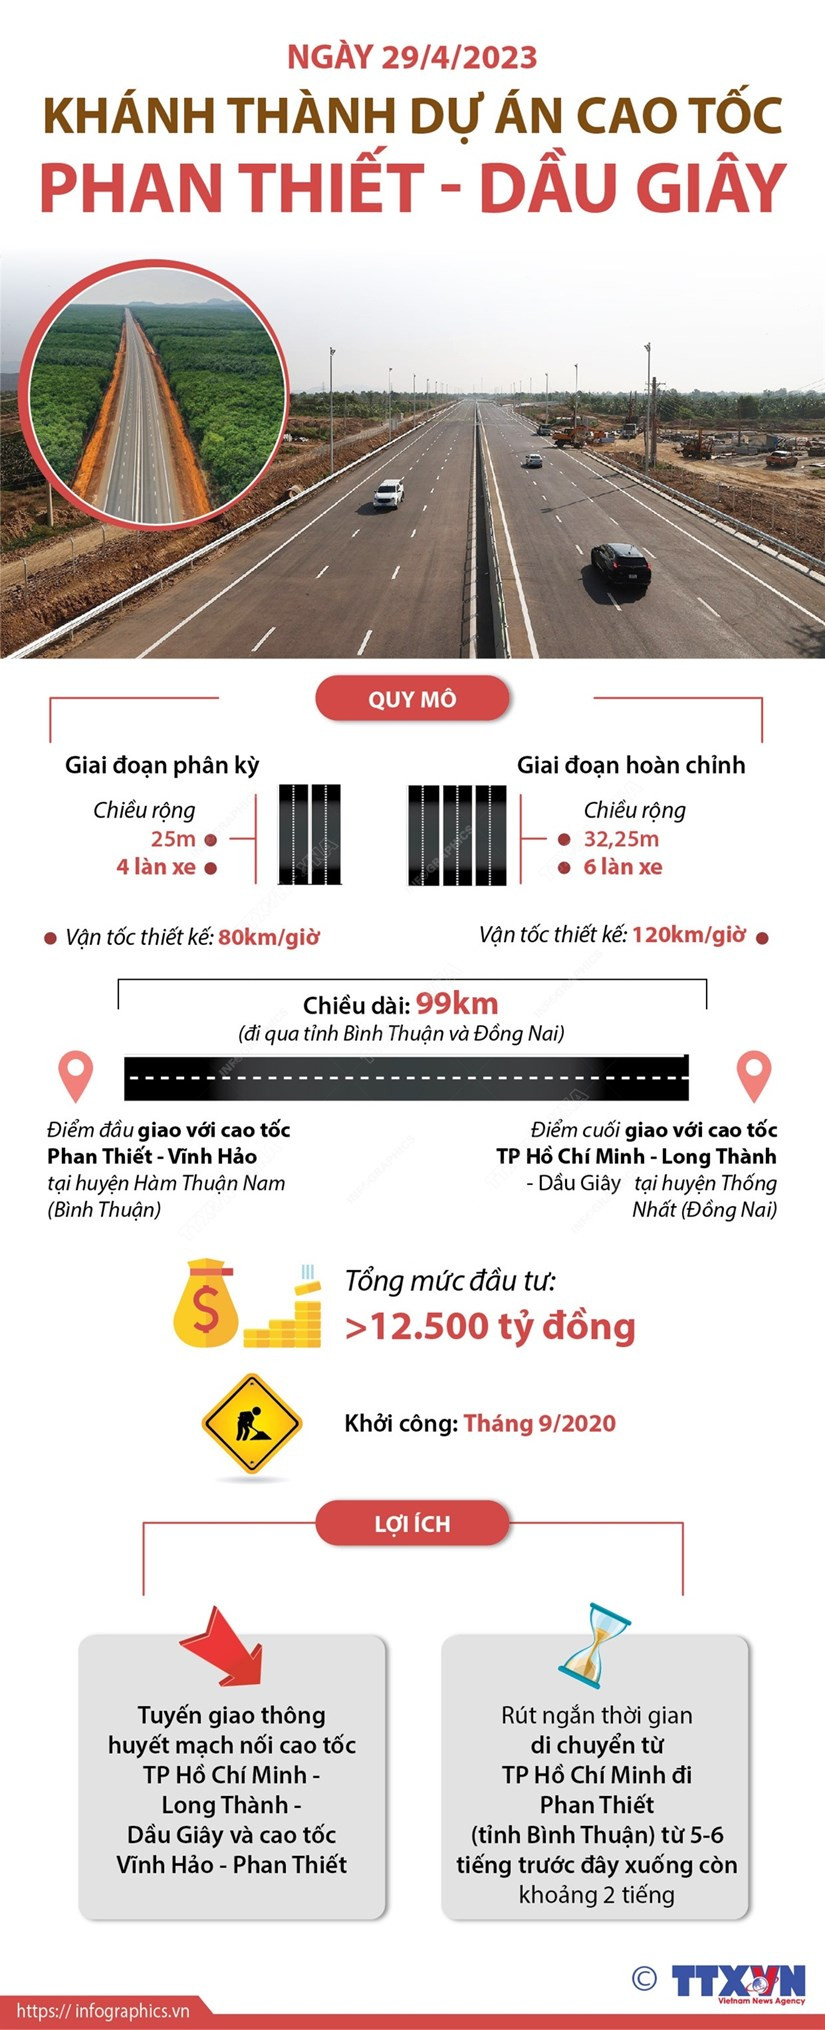 infographics_du_an_cao_toc_phan_thiet_dau_giay.jpeg